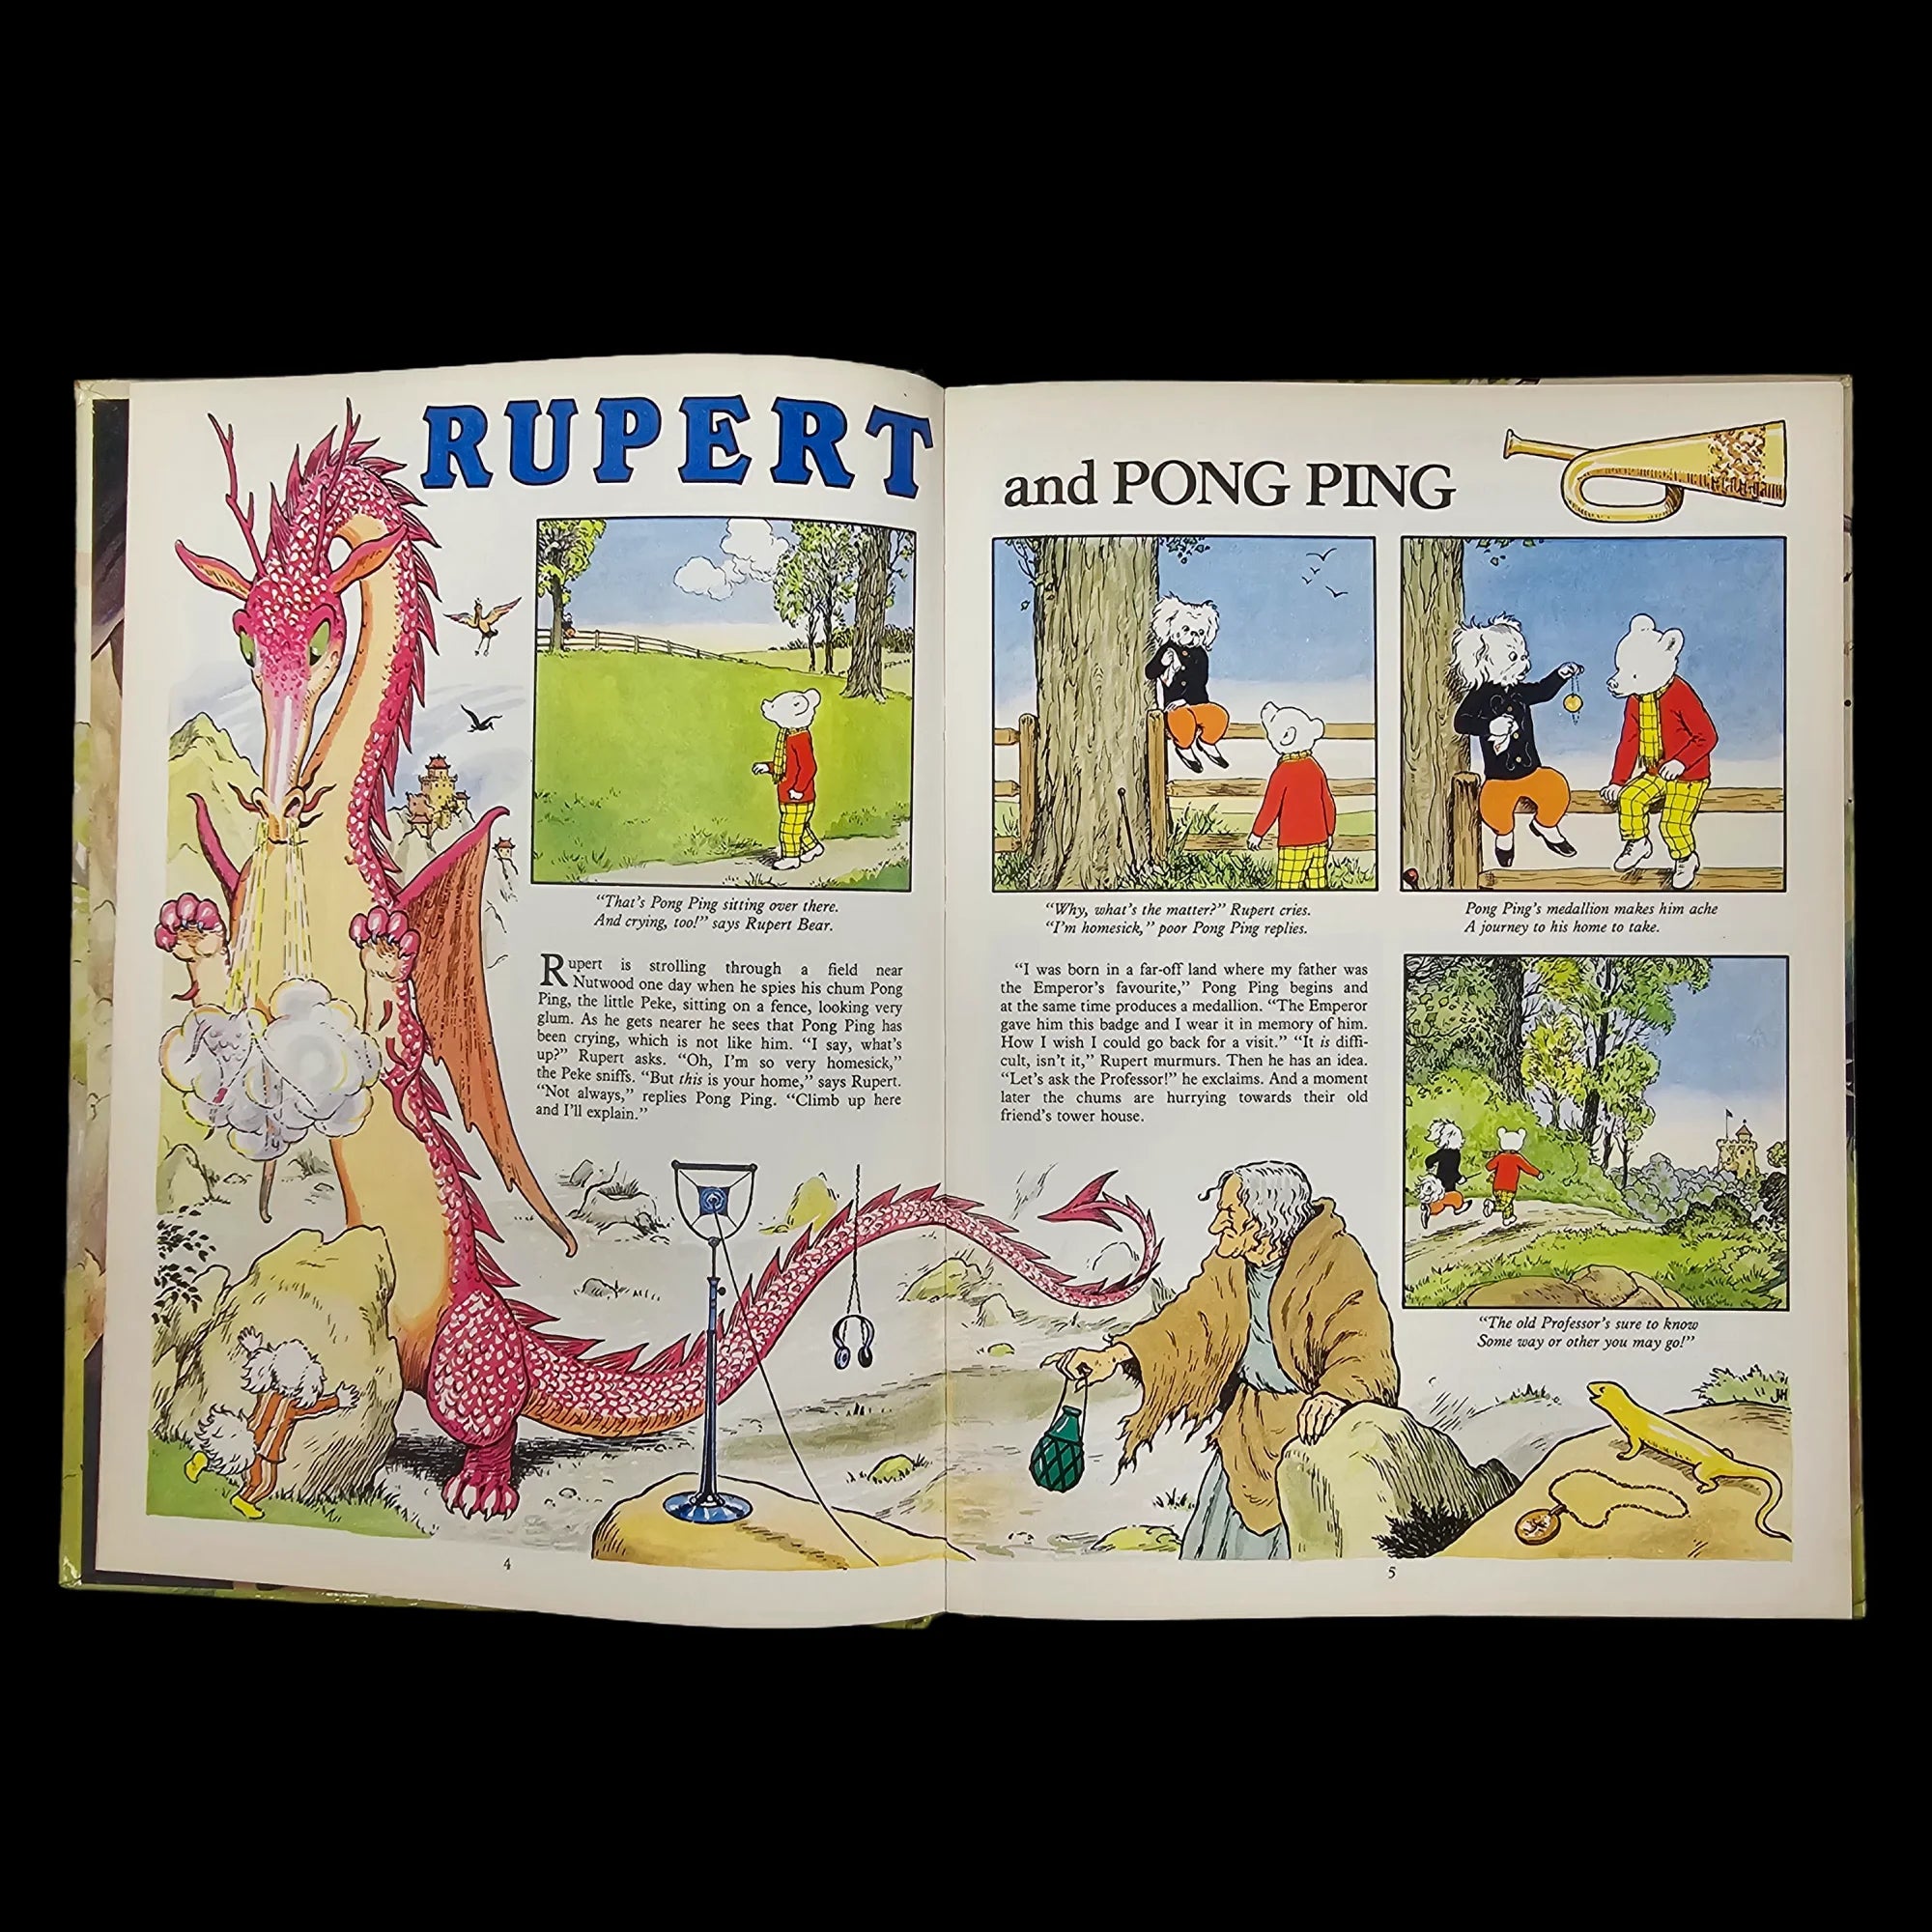 Rupert Bear Daily Express Annual 47 1982 James Henderson